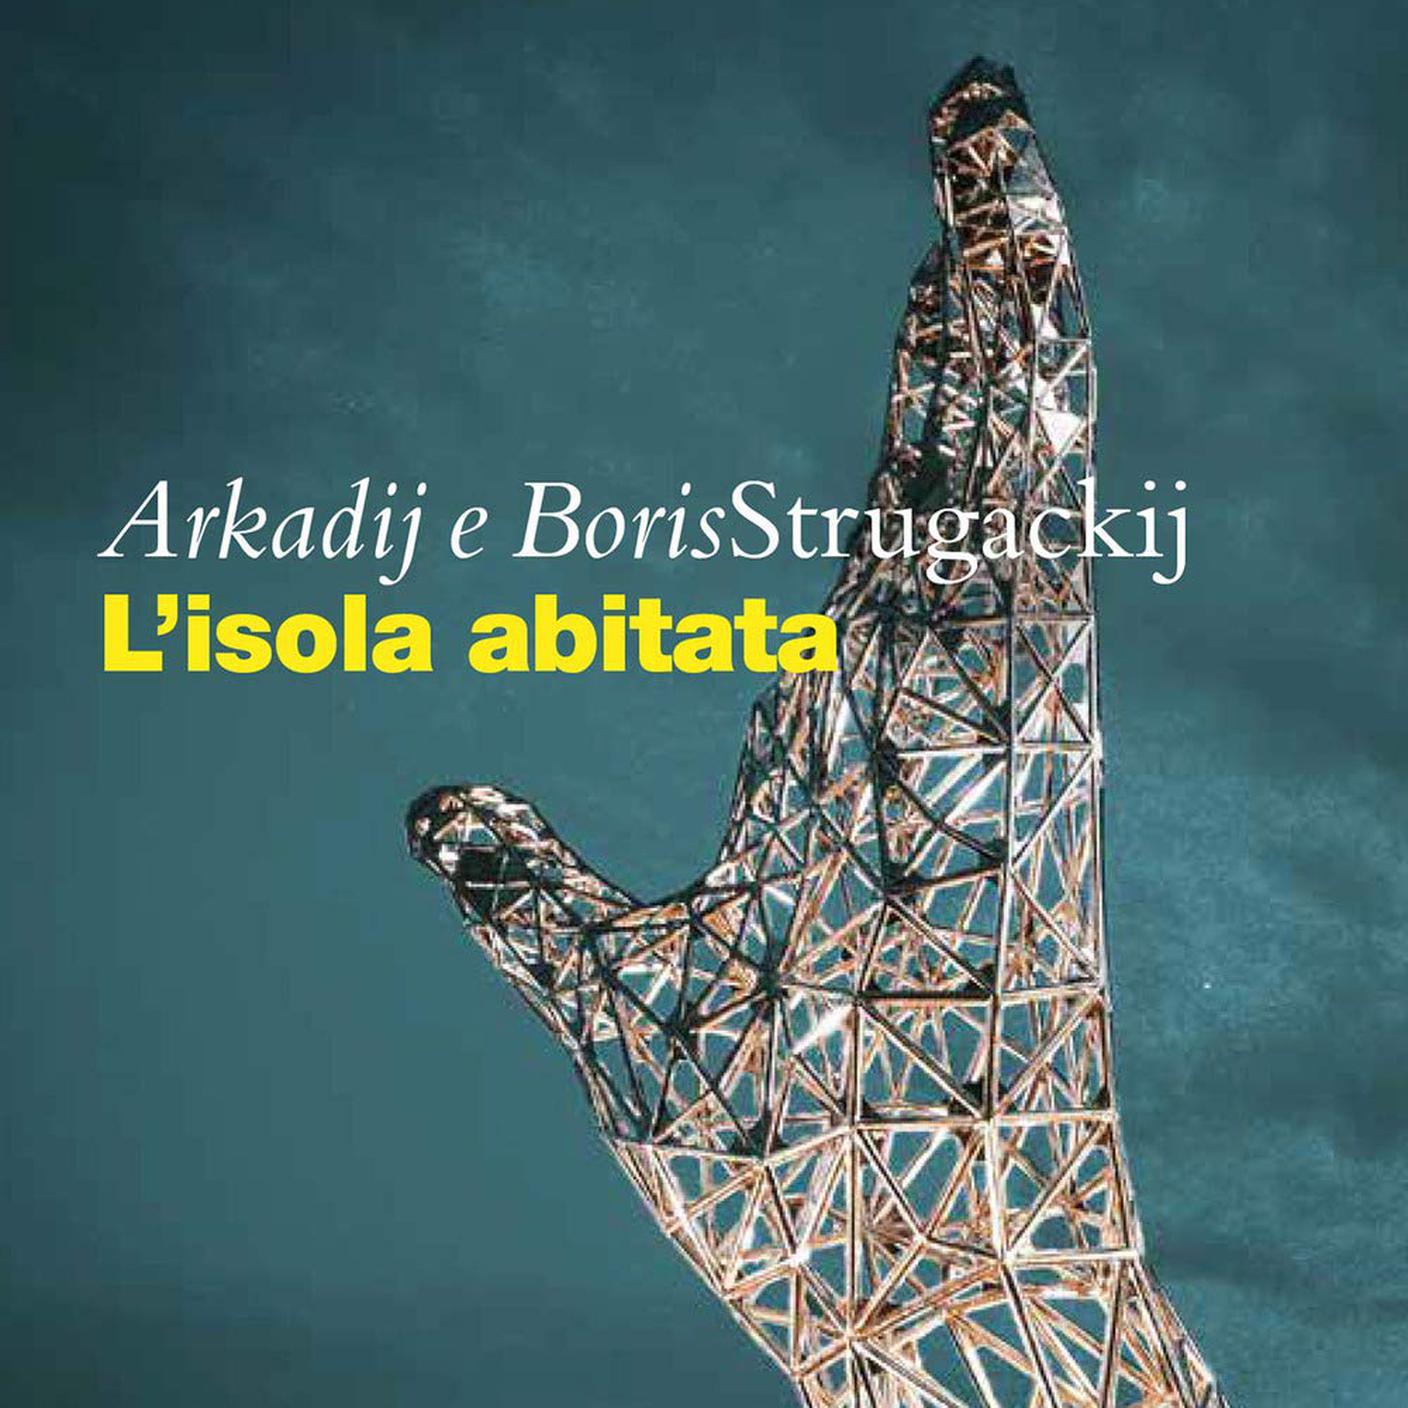 L'isola abitata di Arkadij e Boris Strugackij, Carbonio editore (dettaglio di copertina)